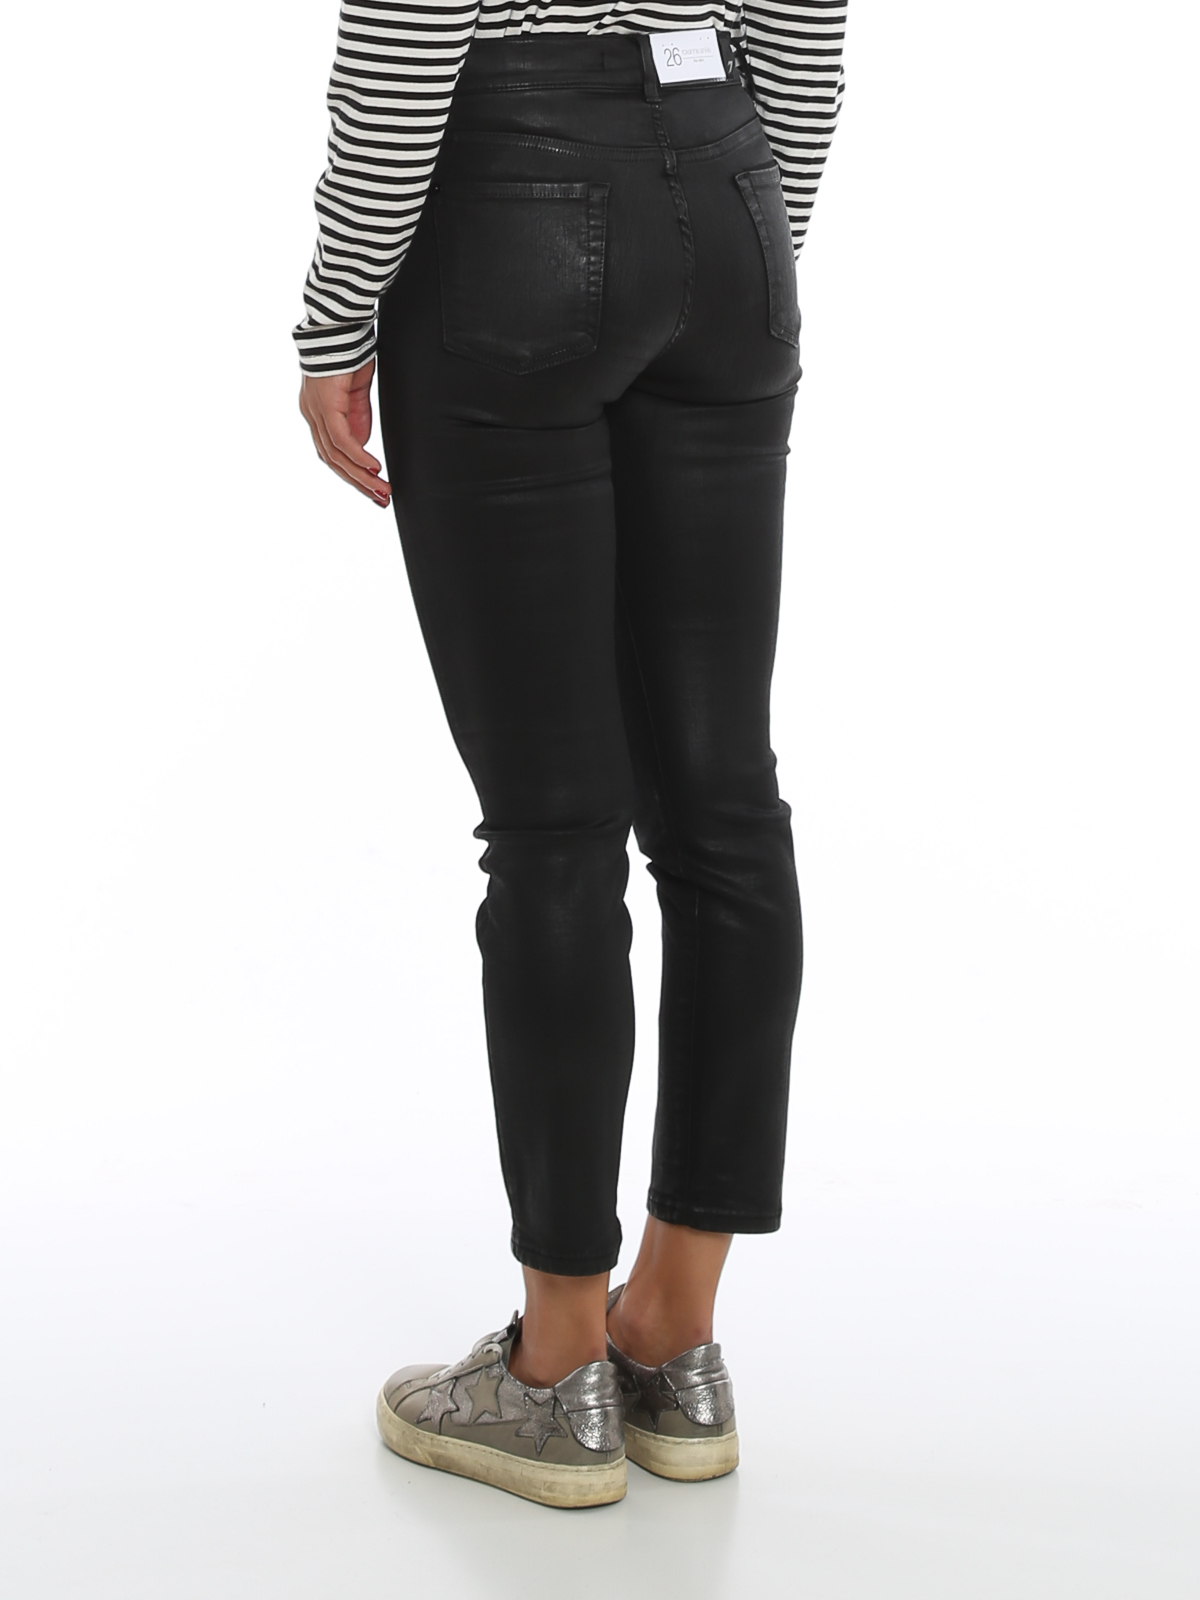 Ongeldig Mis Beschrijven Skinny jeans 7 For All Mankind - Roxanne Ankle jeans - JSVYV500BL